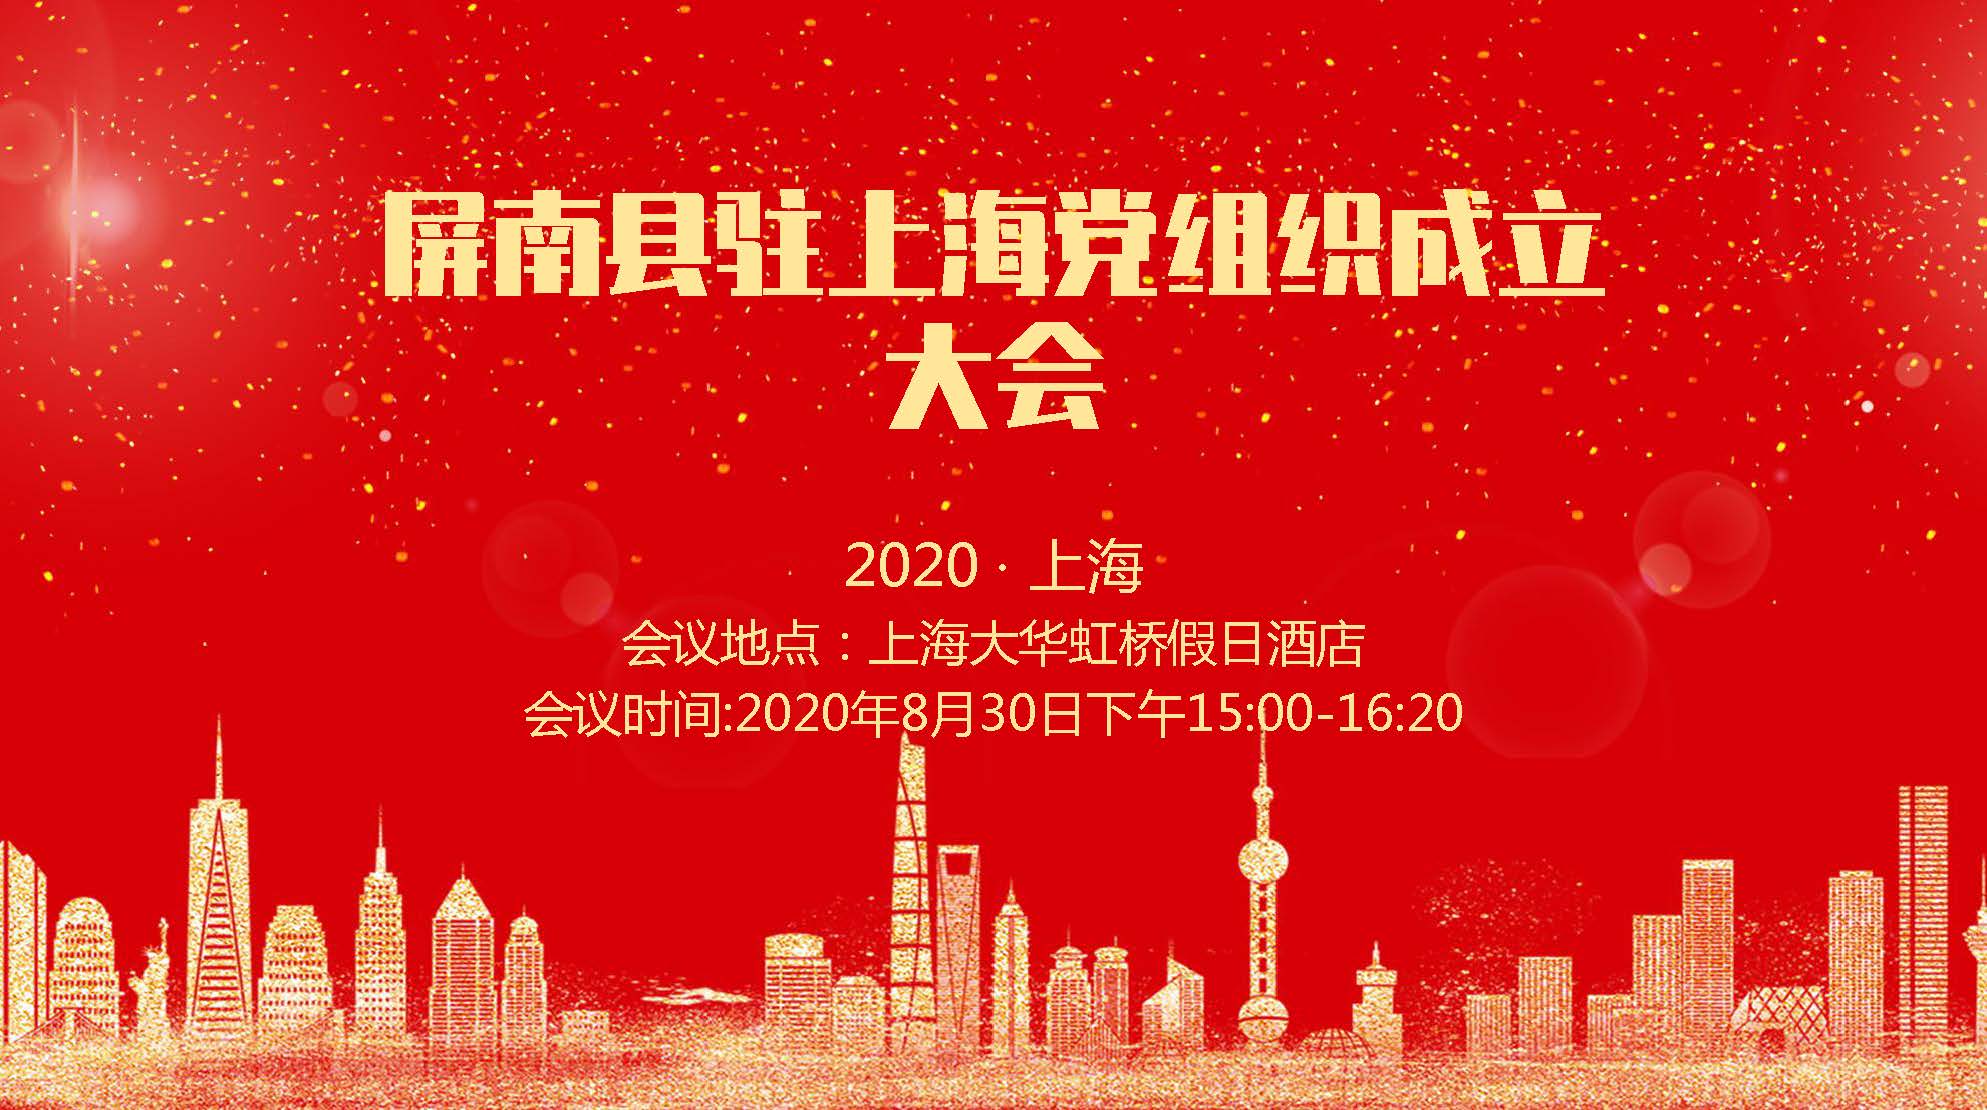 2020-08-30 13:00:00屏南县驻上海党组织成立暨招商推介会议